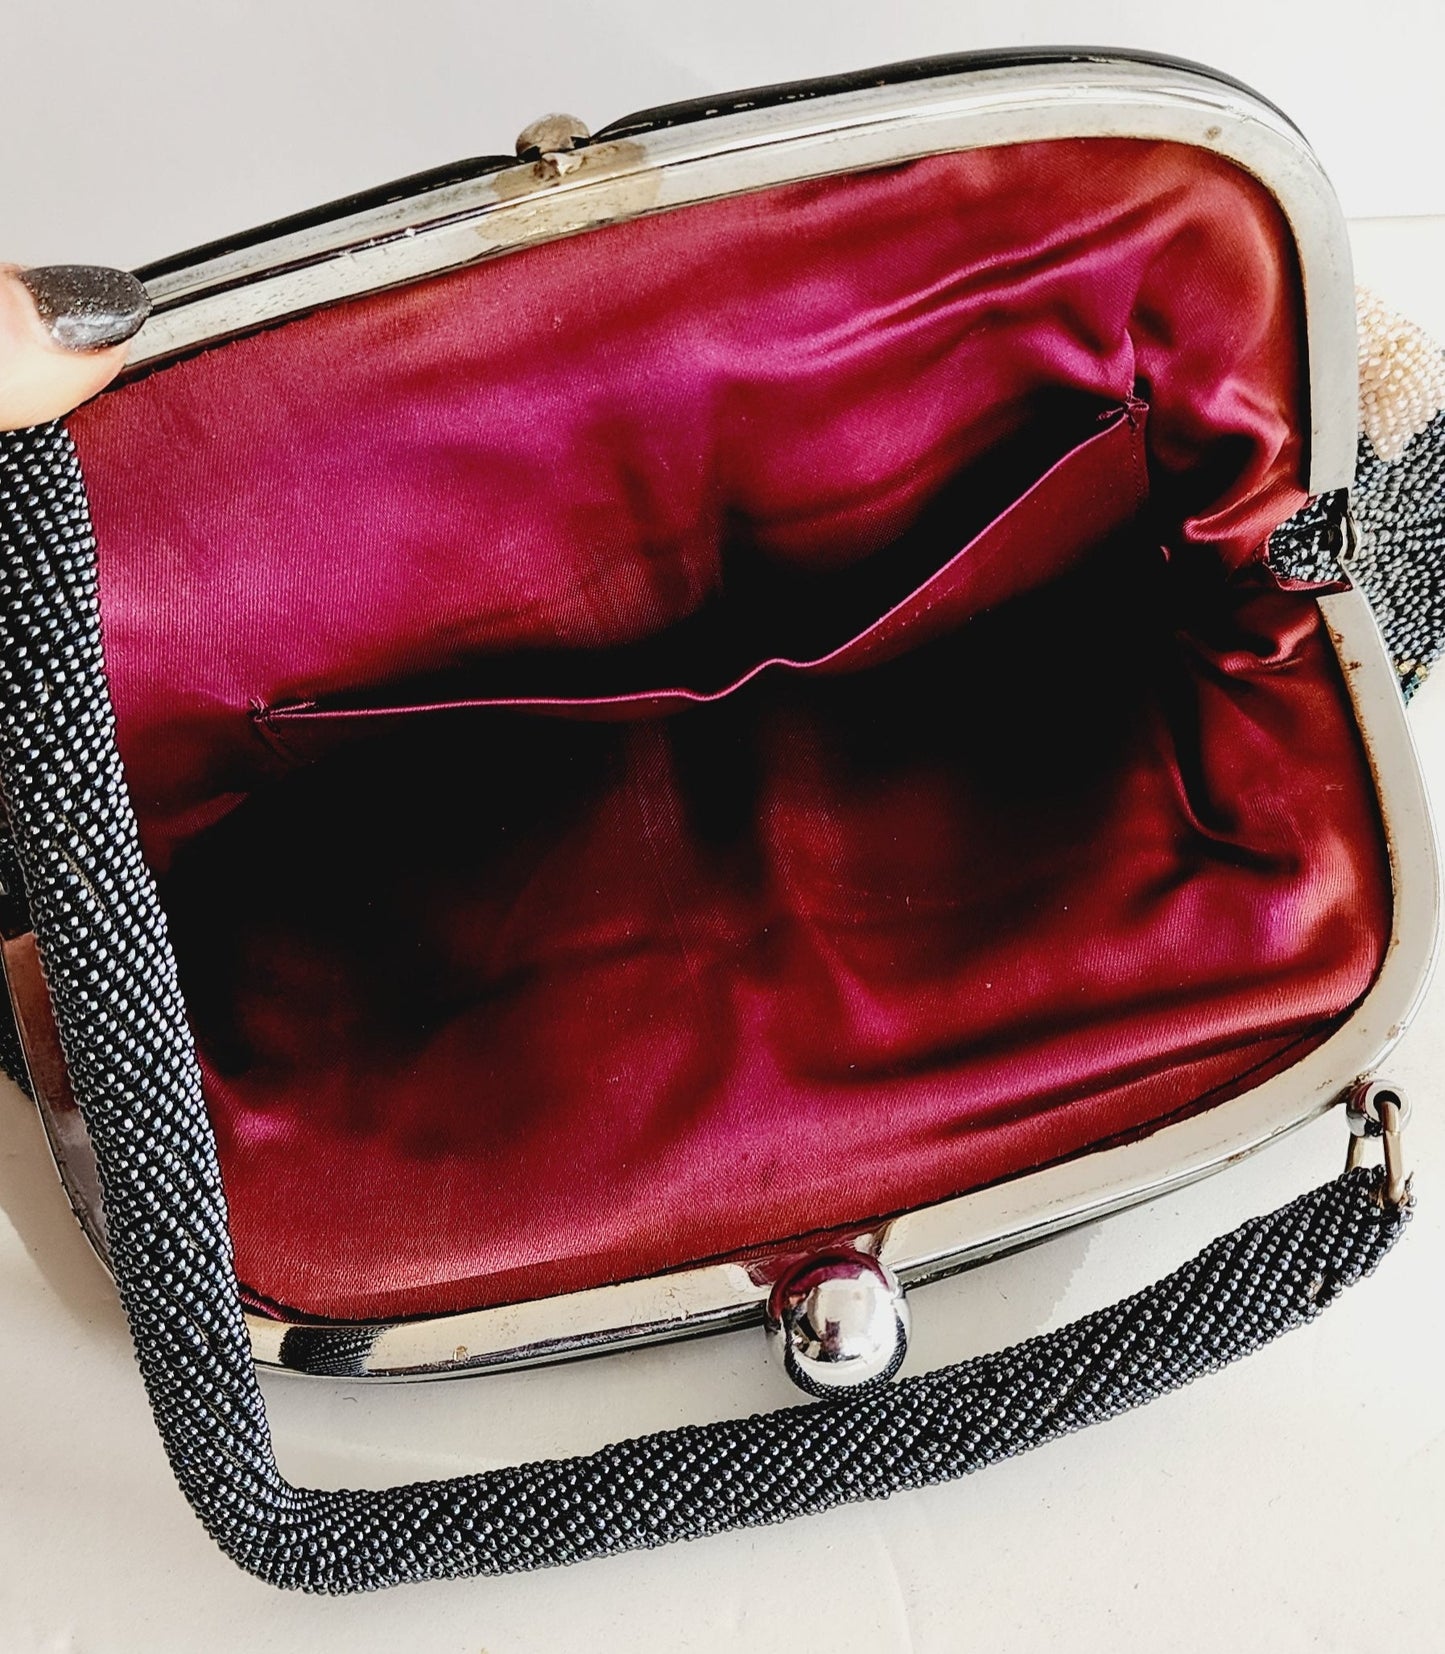 50s Beaded Handbag w/Top Handle, Gray Metallic Hematite Floral Design